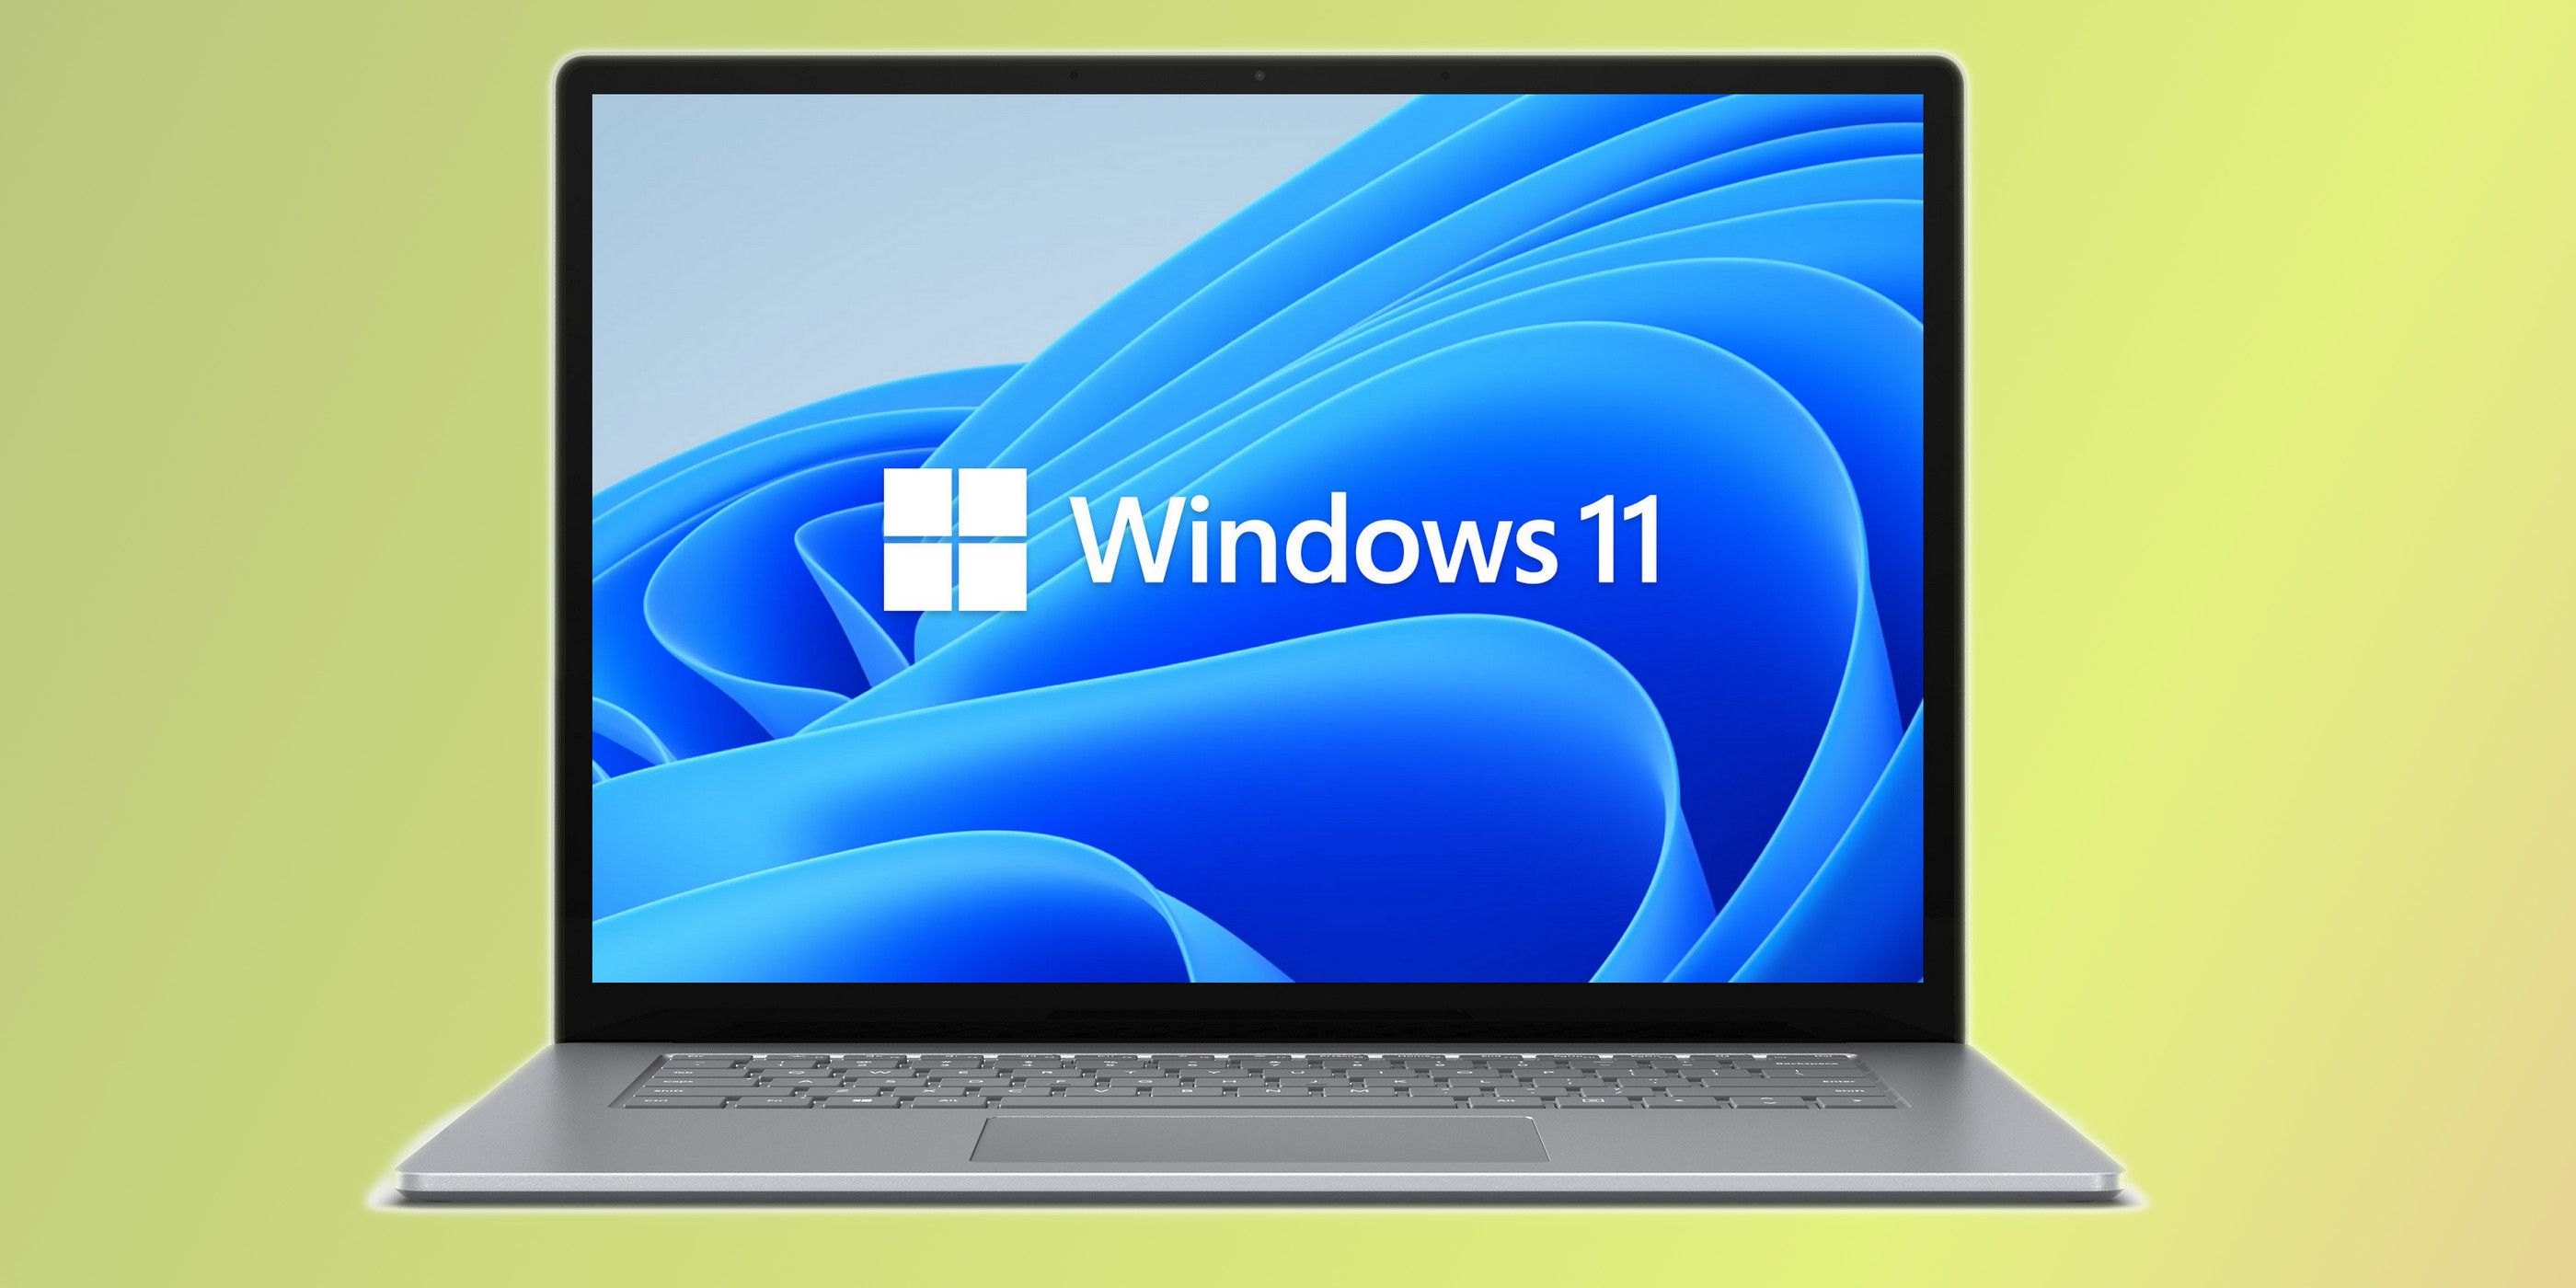 Windows 11 Will Run On Older PCs